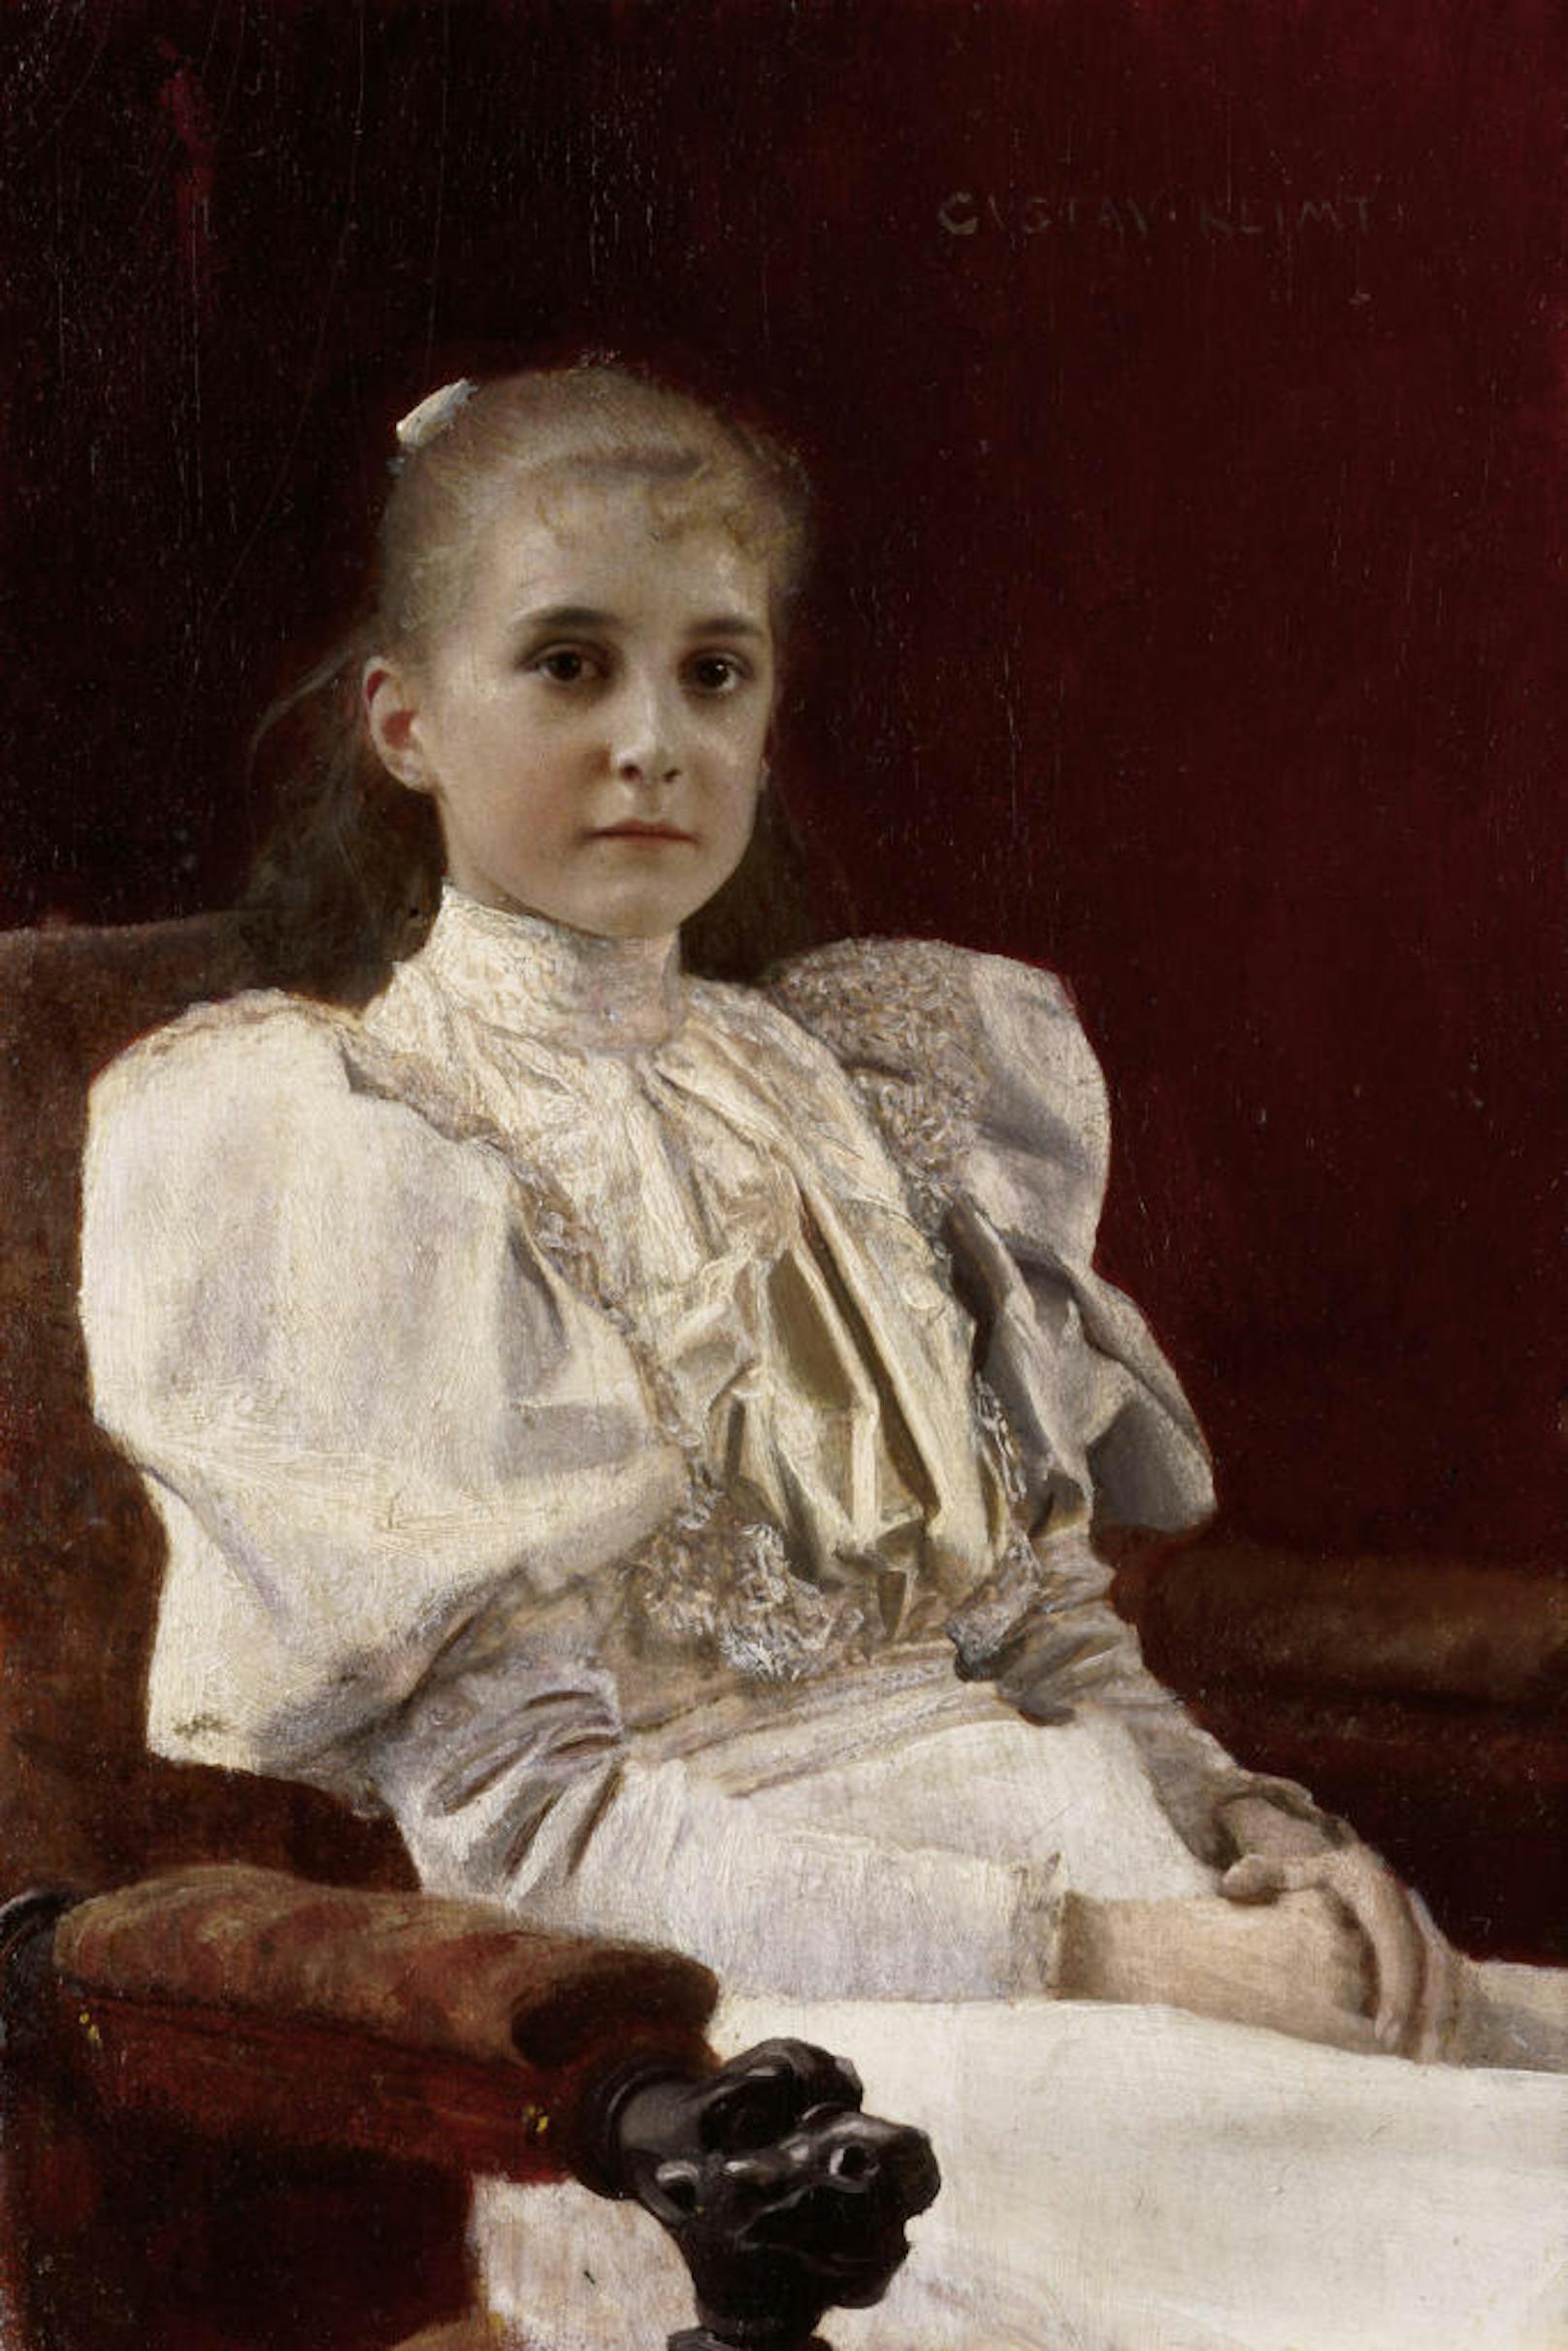 Ebenfalls im Leopold Museum wartet diese junge Schönheit, das "Sitzende junge Mädchen", ab 22.6.